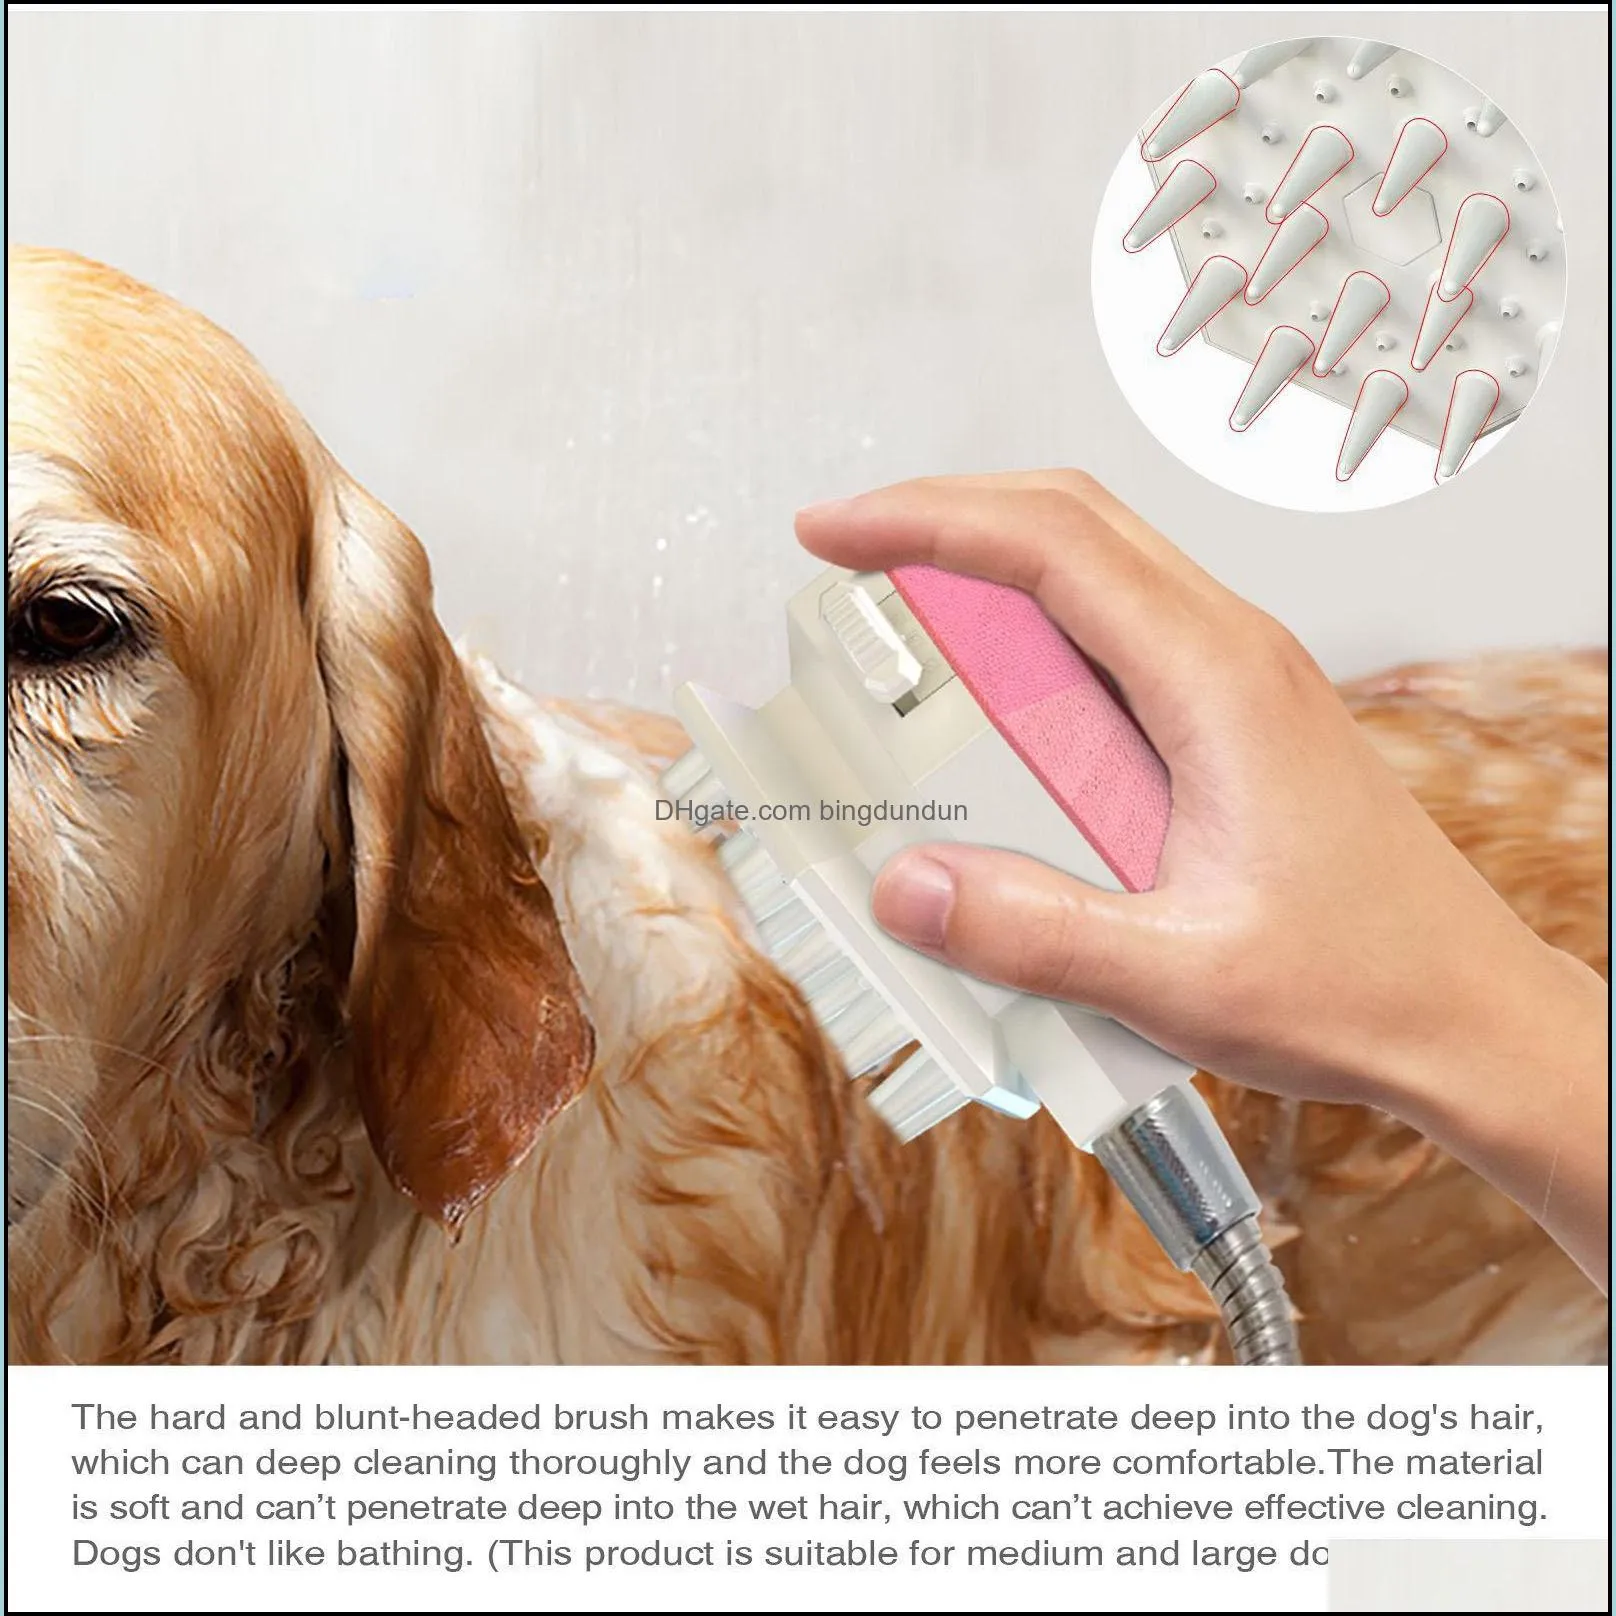 hr 3 in 1 multifunction pets washing shower head sprayer shampoo dog bathsprayer g1/2 thread can add bath foam